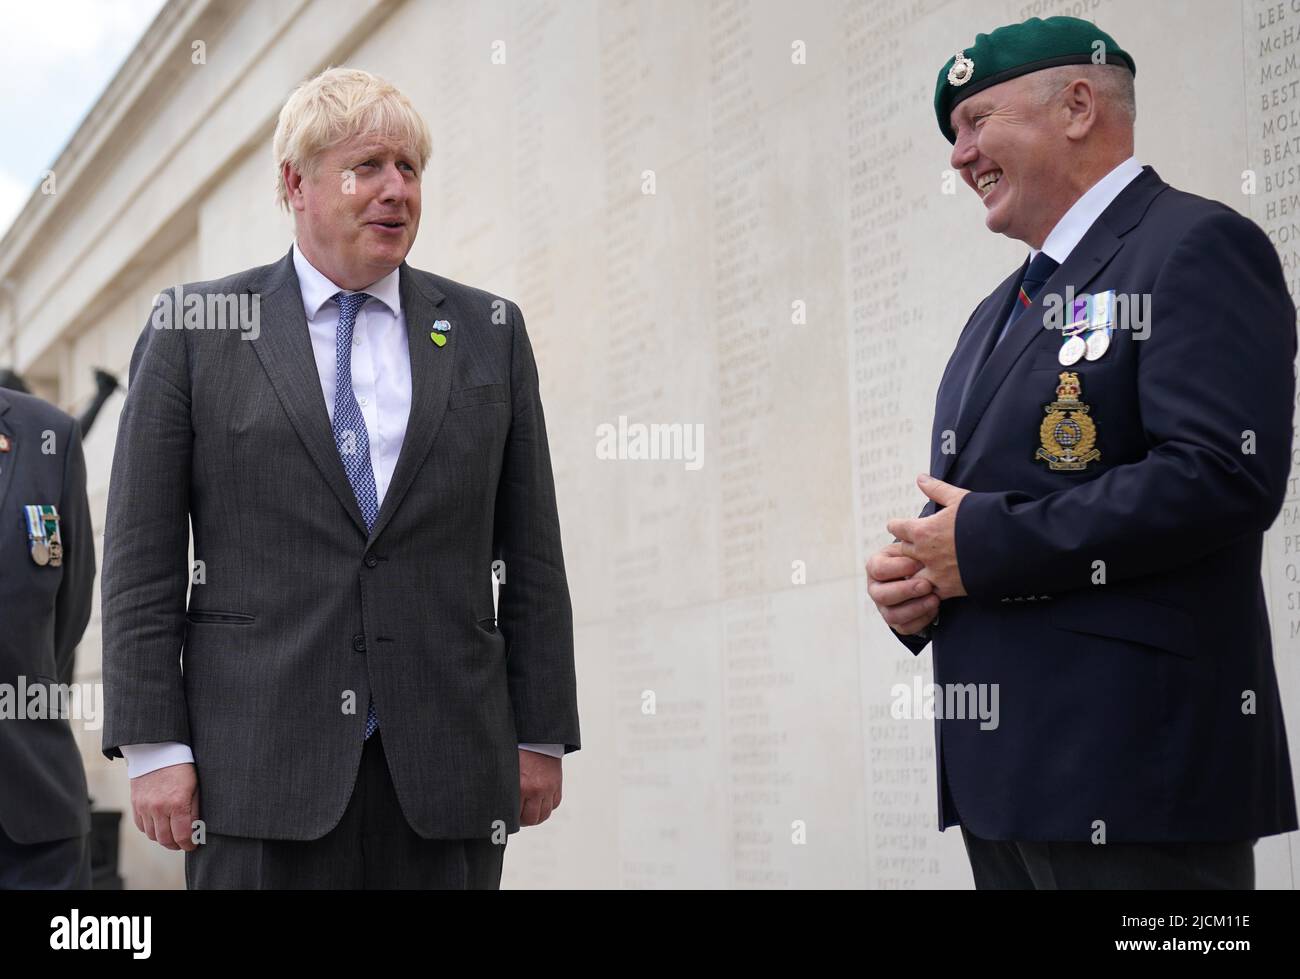 Il primo Ministro Boris Johnson (a sinistra) incontra i veterani al National Memorial Arboretum di Alrewas, Staffordshire, prima di un servizio per celebrare il 40th anniversario della liberazione delle Isole Falkland. Data foto: Martedì 14 giugno 2022. Foto Stock